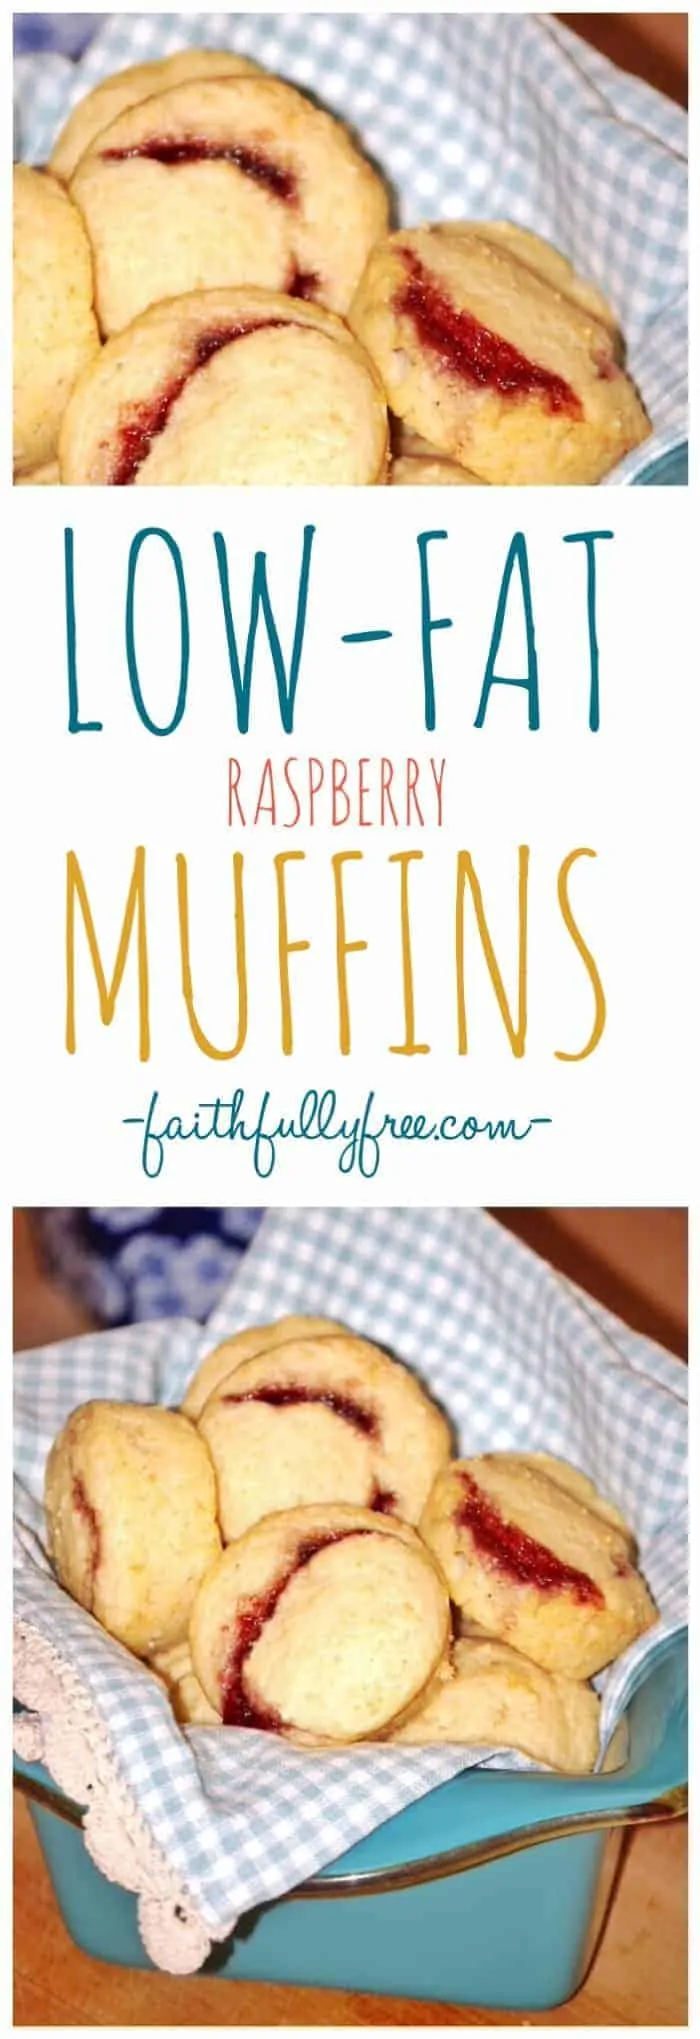 Low-fat Raspberry Muffins Recipe